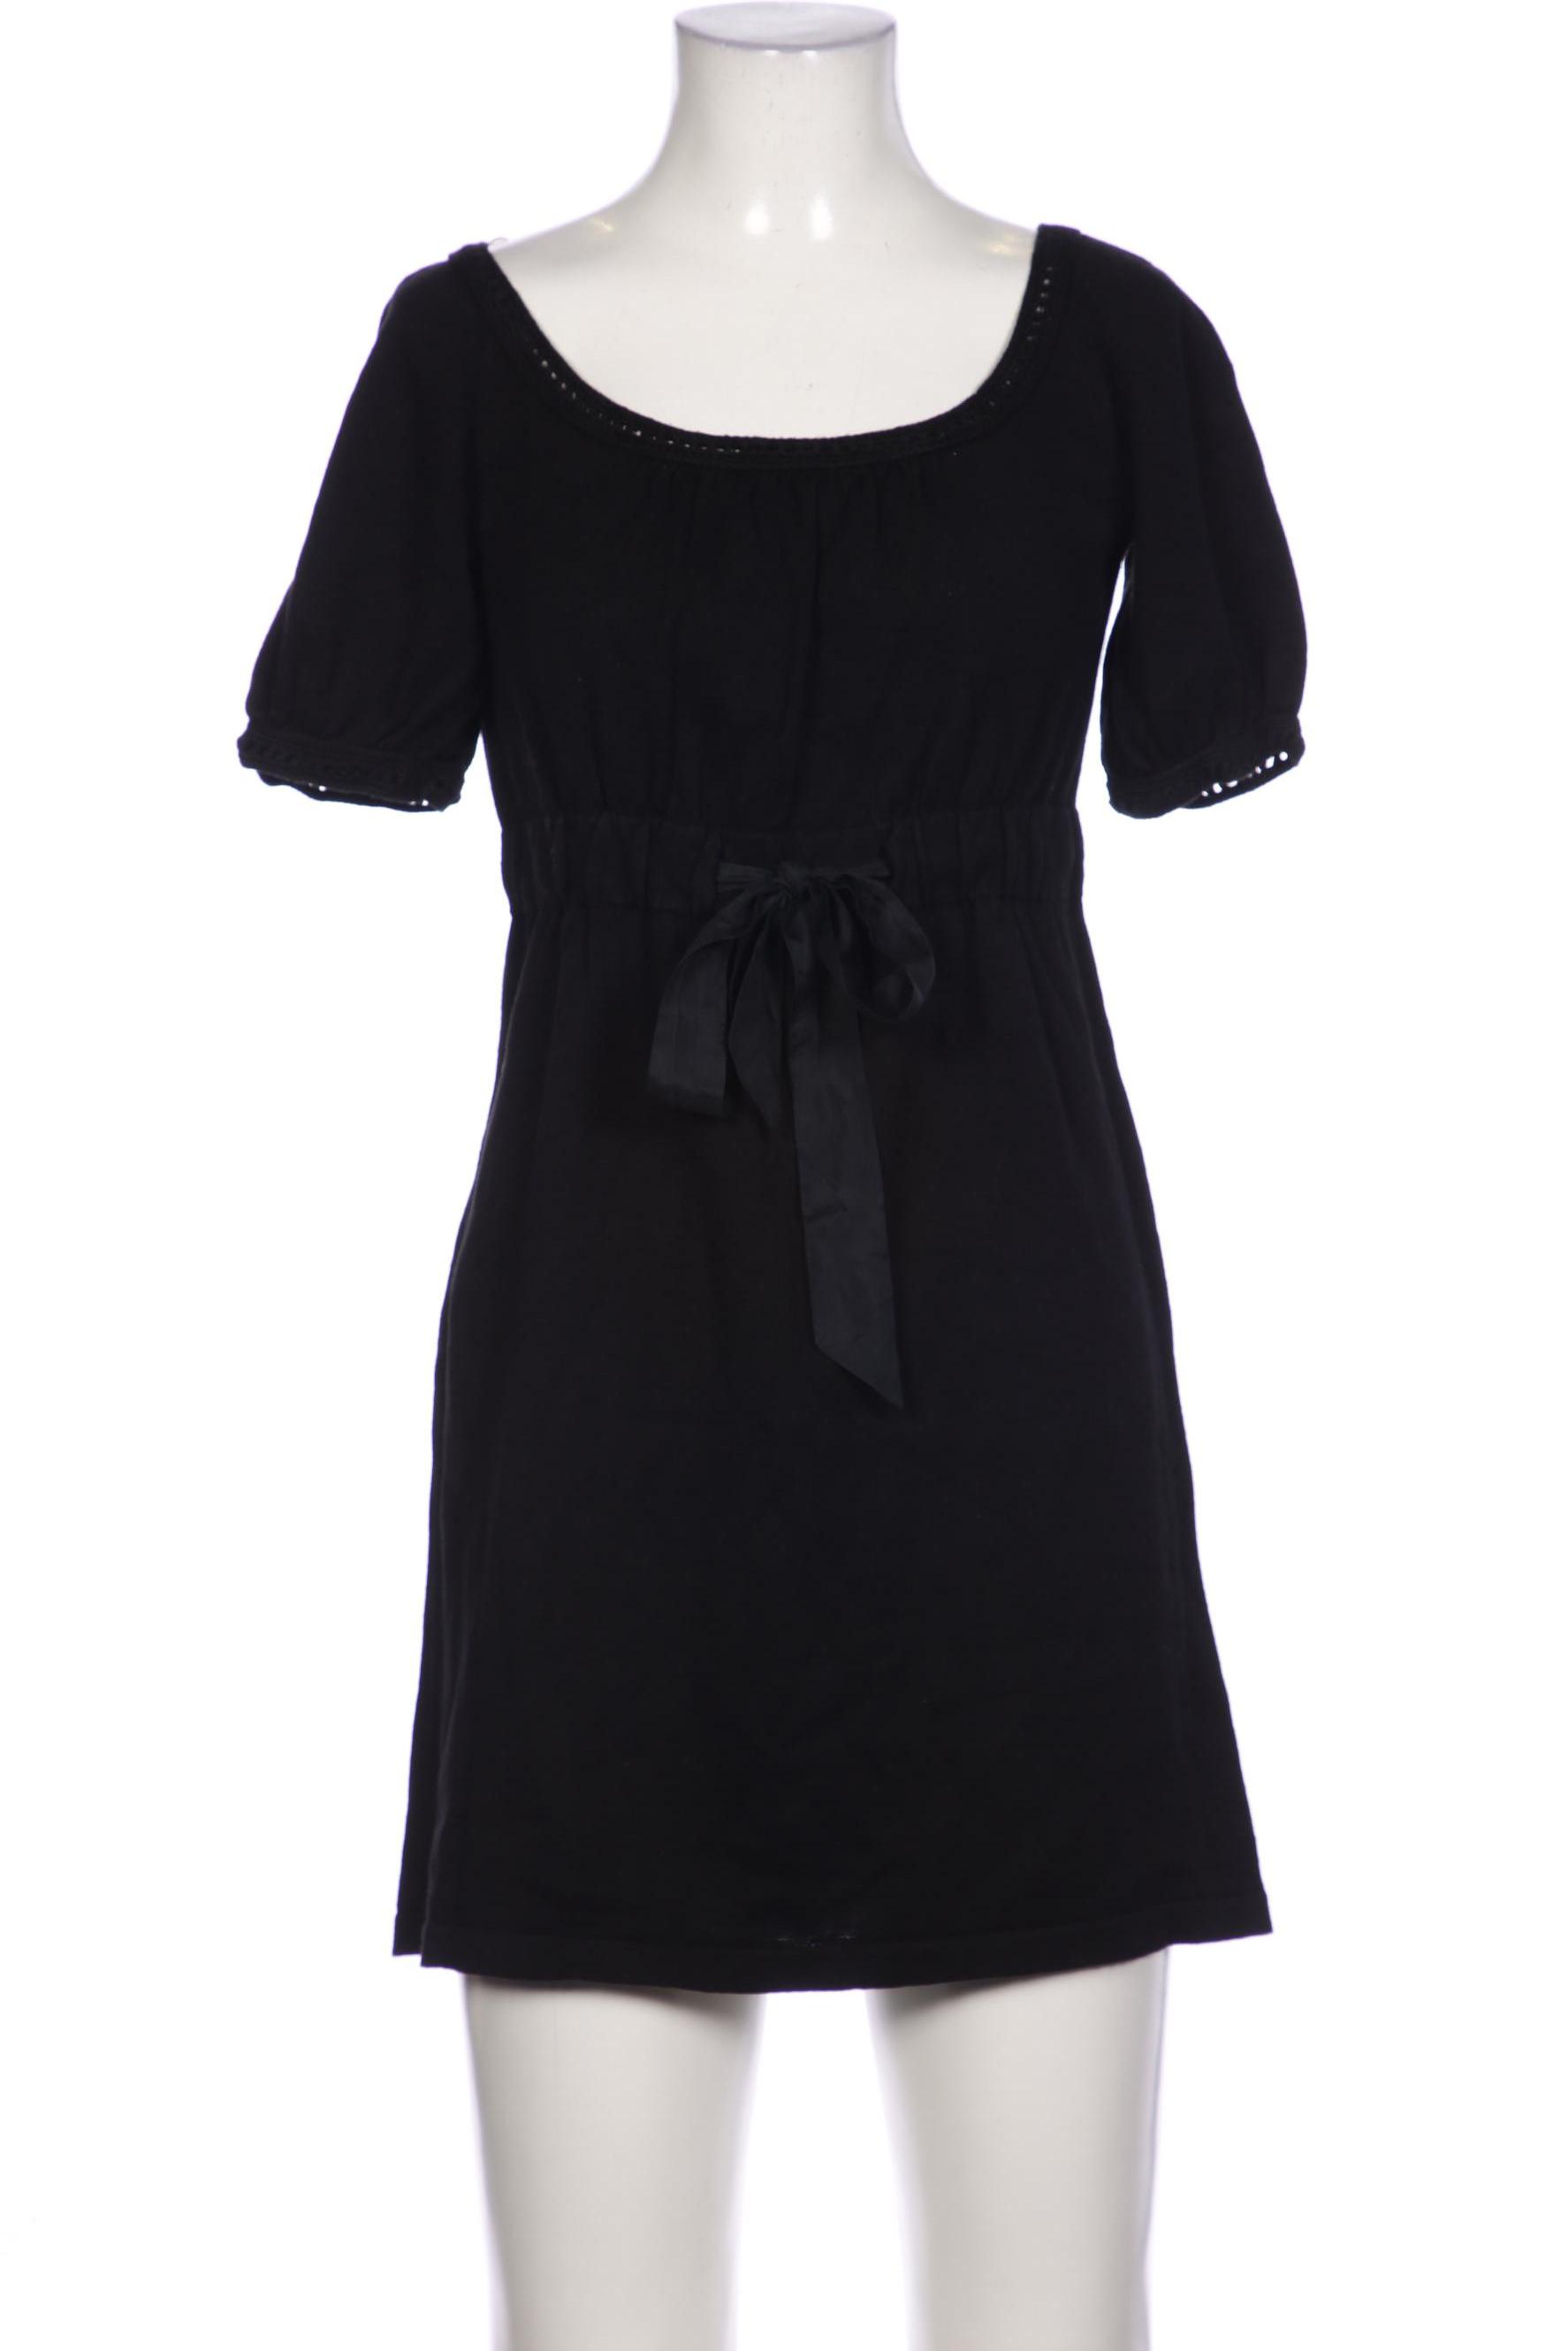 NAF NAF Damen Kleid, schwarz, Gr. 36 von Naf Naf